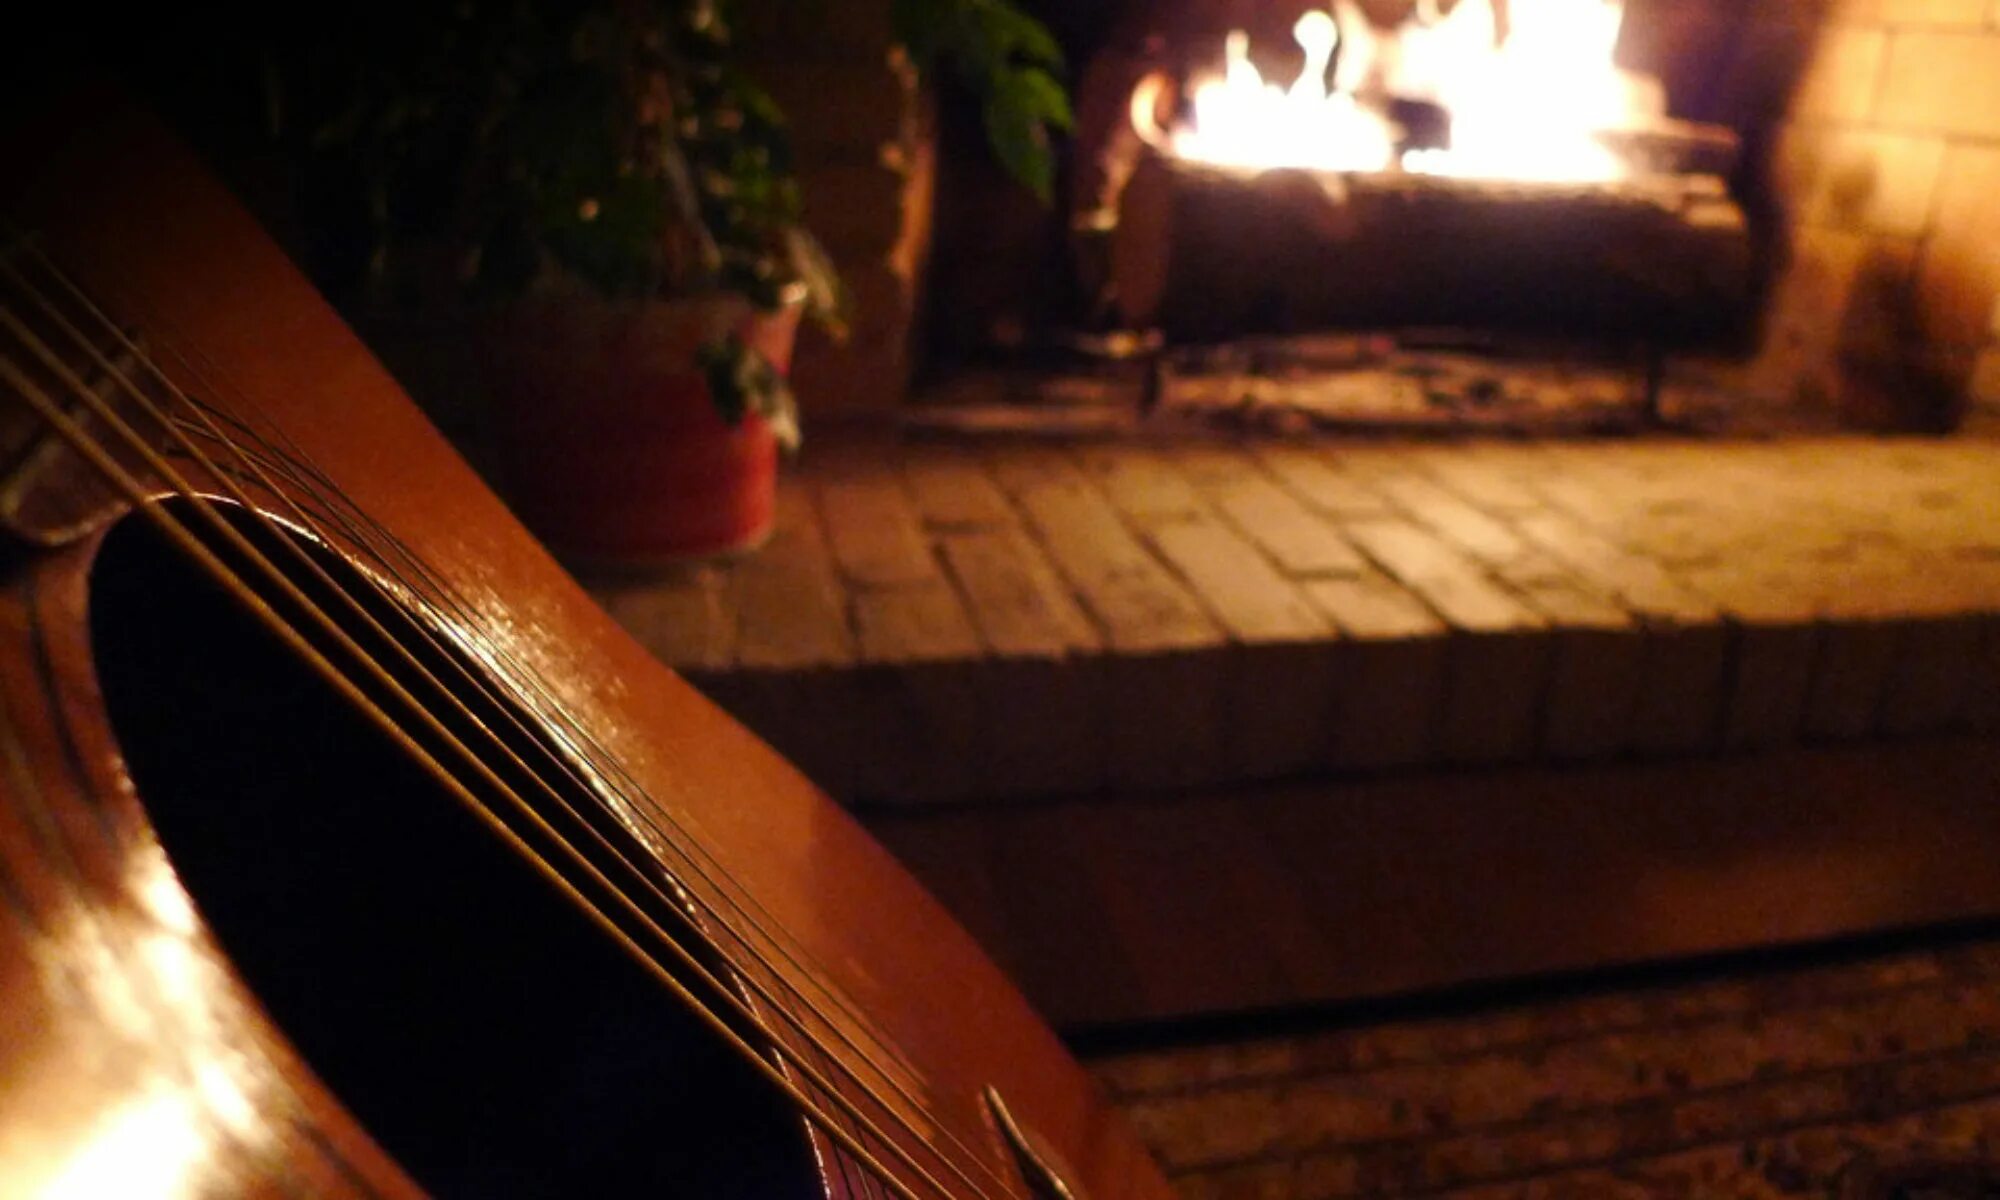 Домой гитара пой. Уютный вечер с гитарой. Посиделки с гитарой дома. Гитара камин. Гитара у камина.